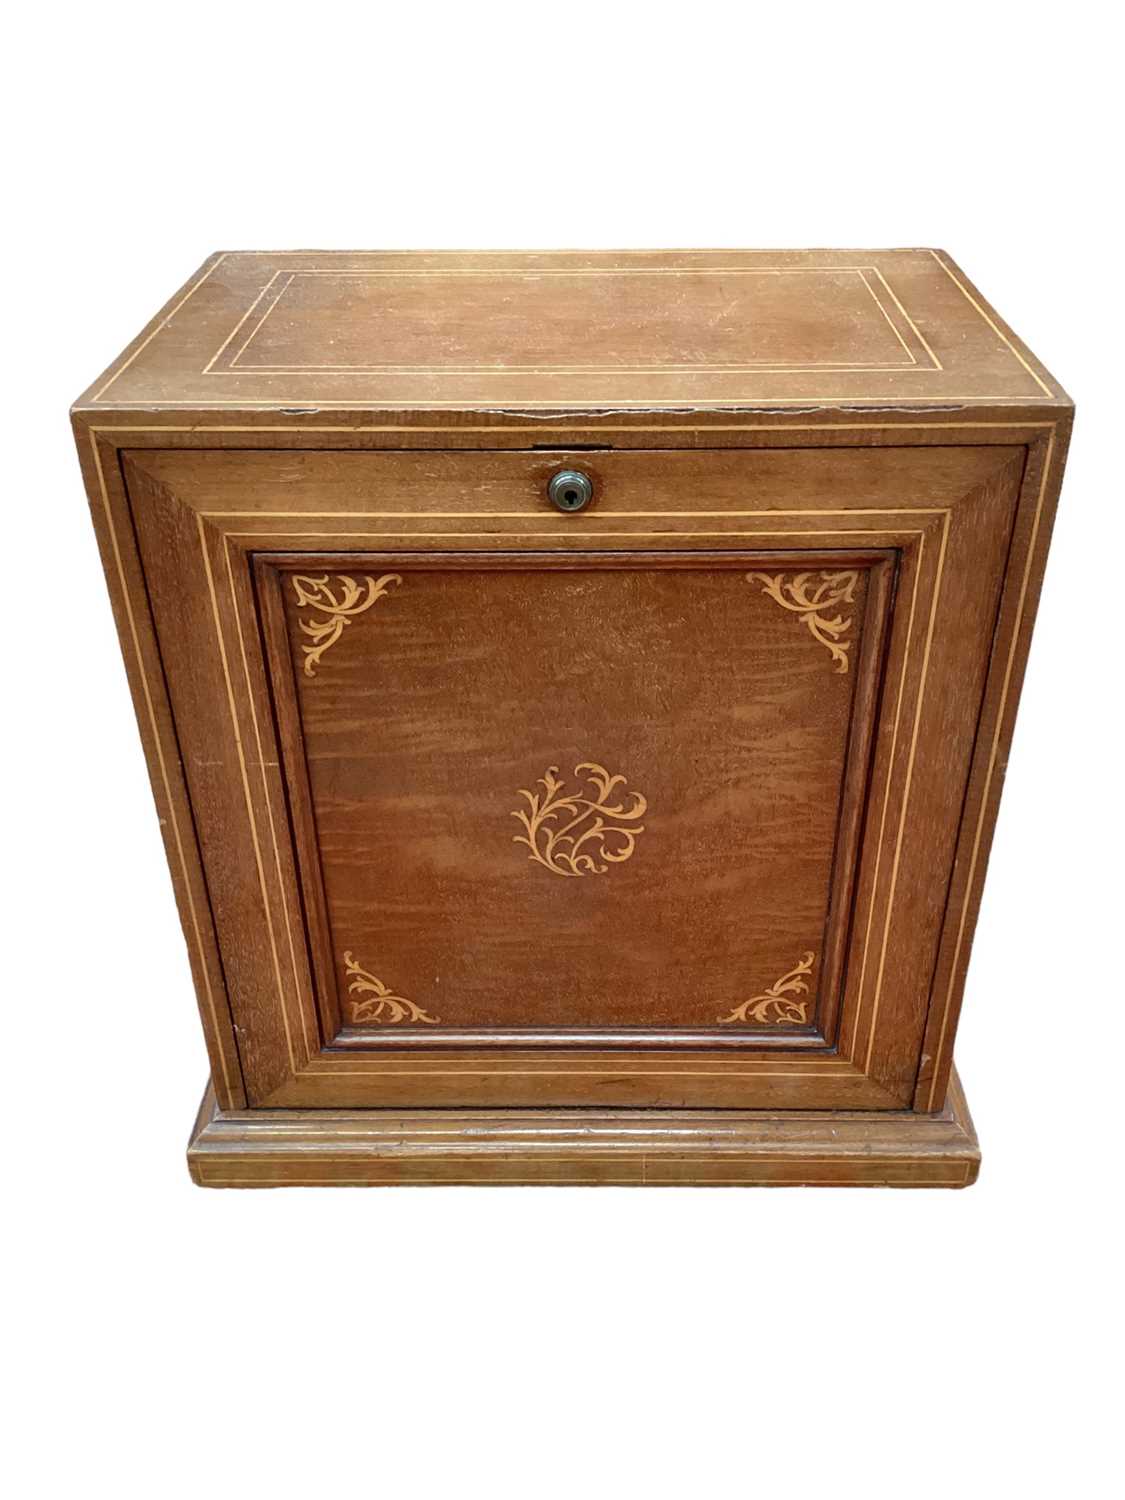 Edwardian limed mahogany desk secretaire - Image 2 of 8